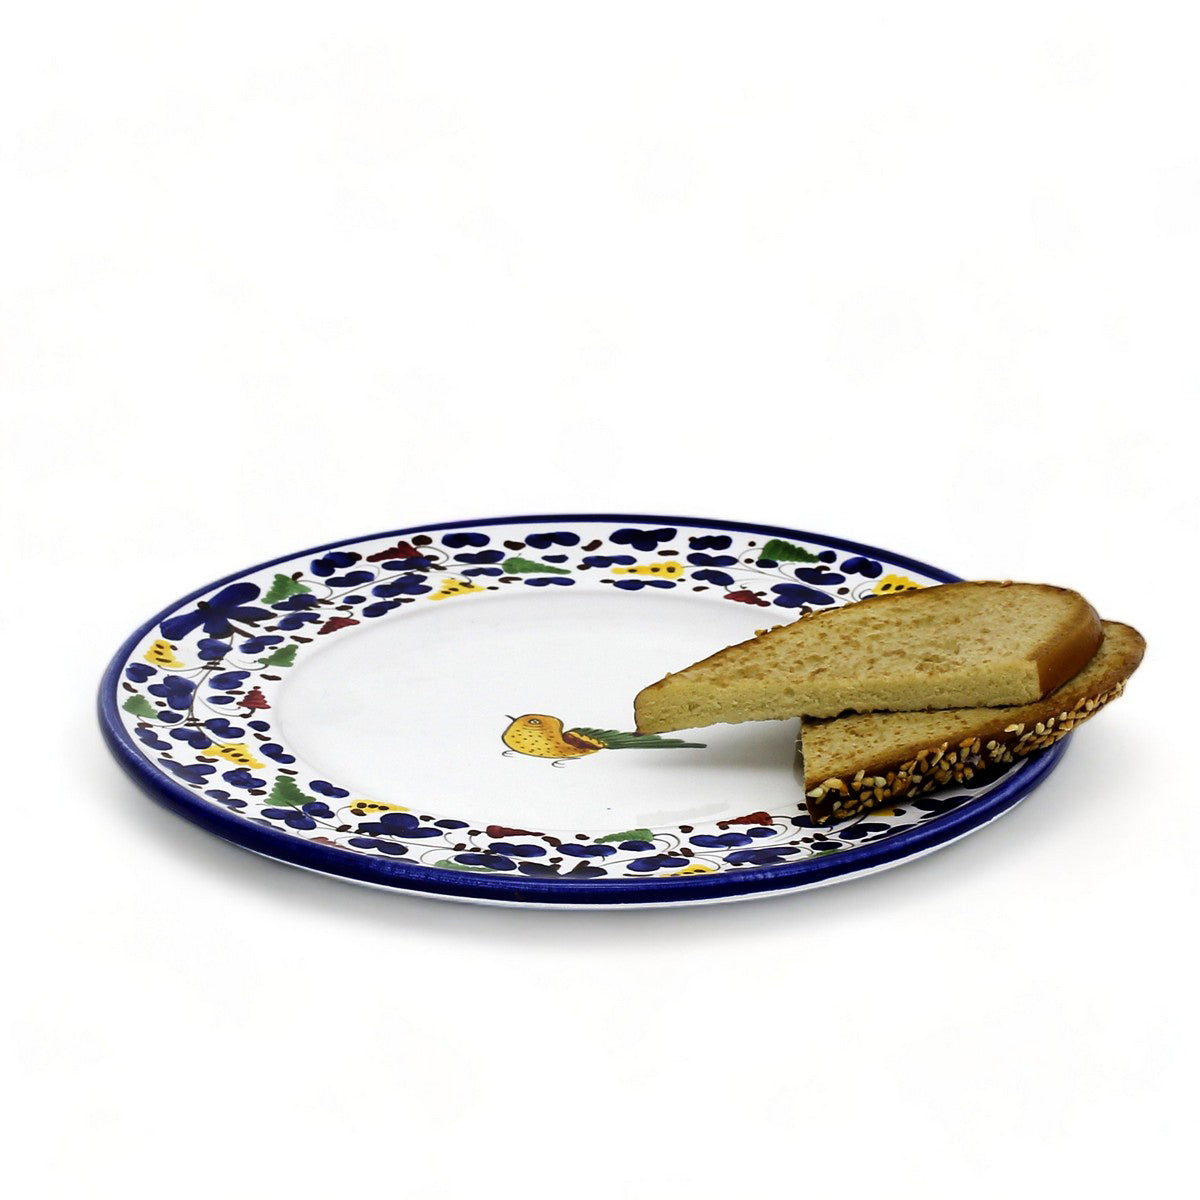 ARABESCO BLUE DERUTA: Salad/Dessert Plate